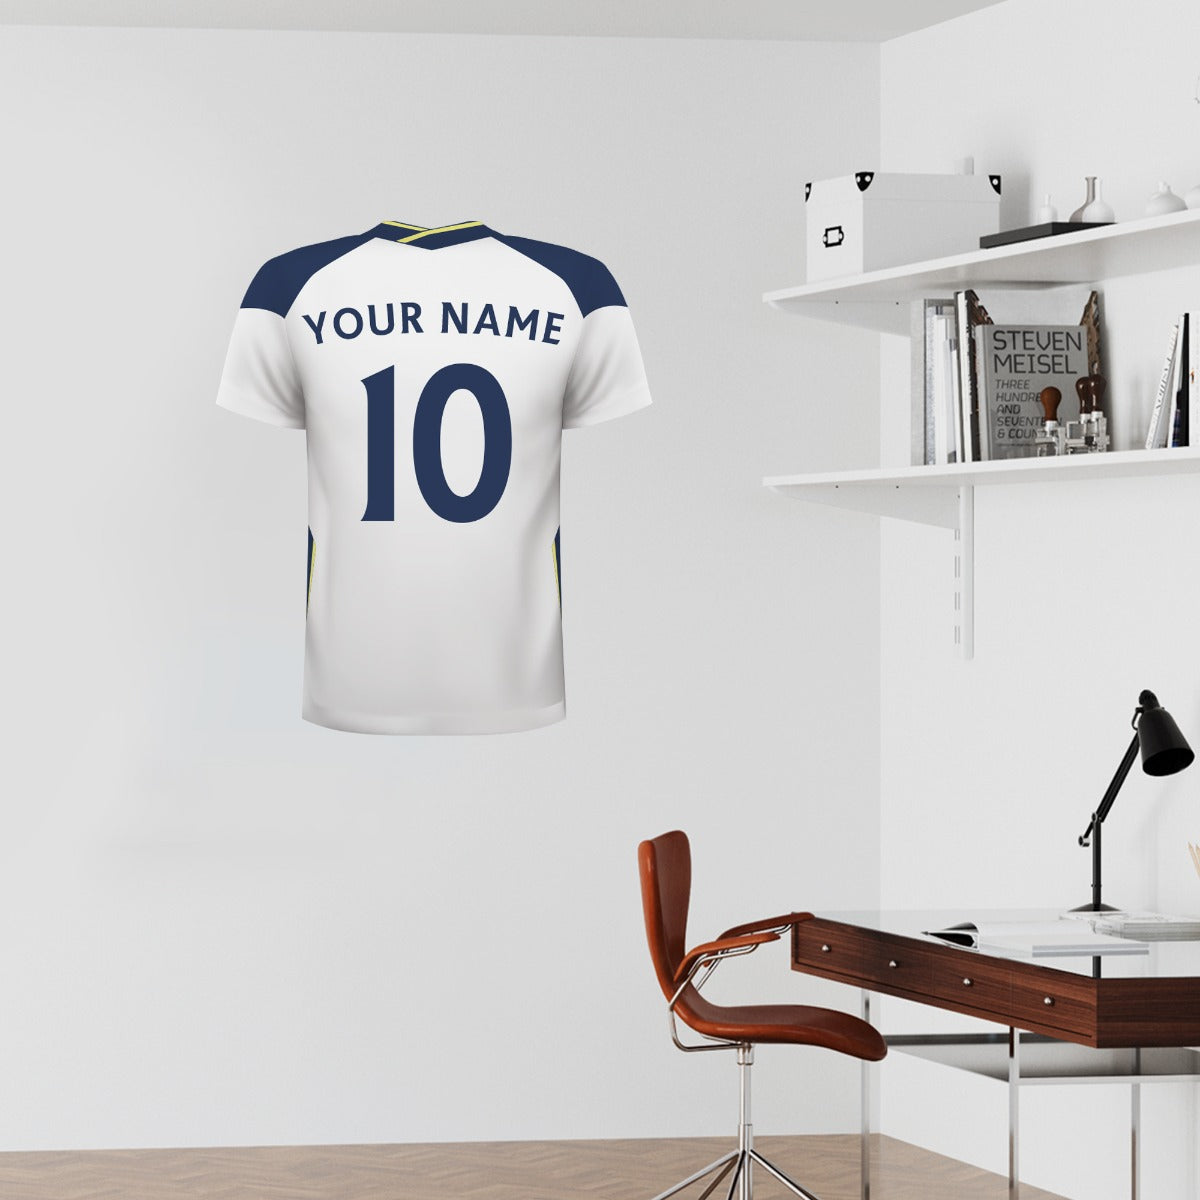 Tottenham Hotspur Football Club - Personalised Football Shirt Wall Sticker 20/21 + Tottenham Hotspur Crest Set